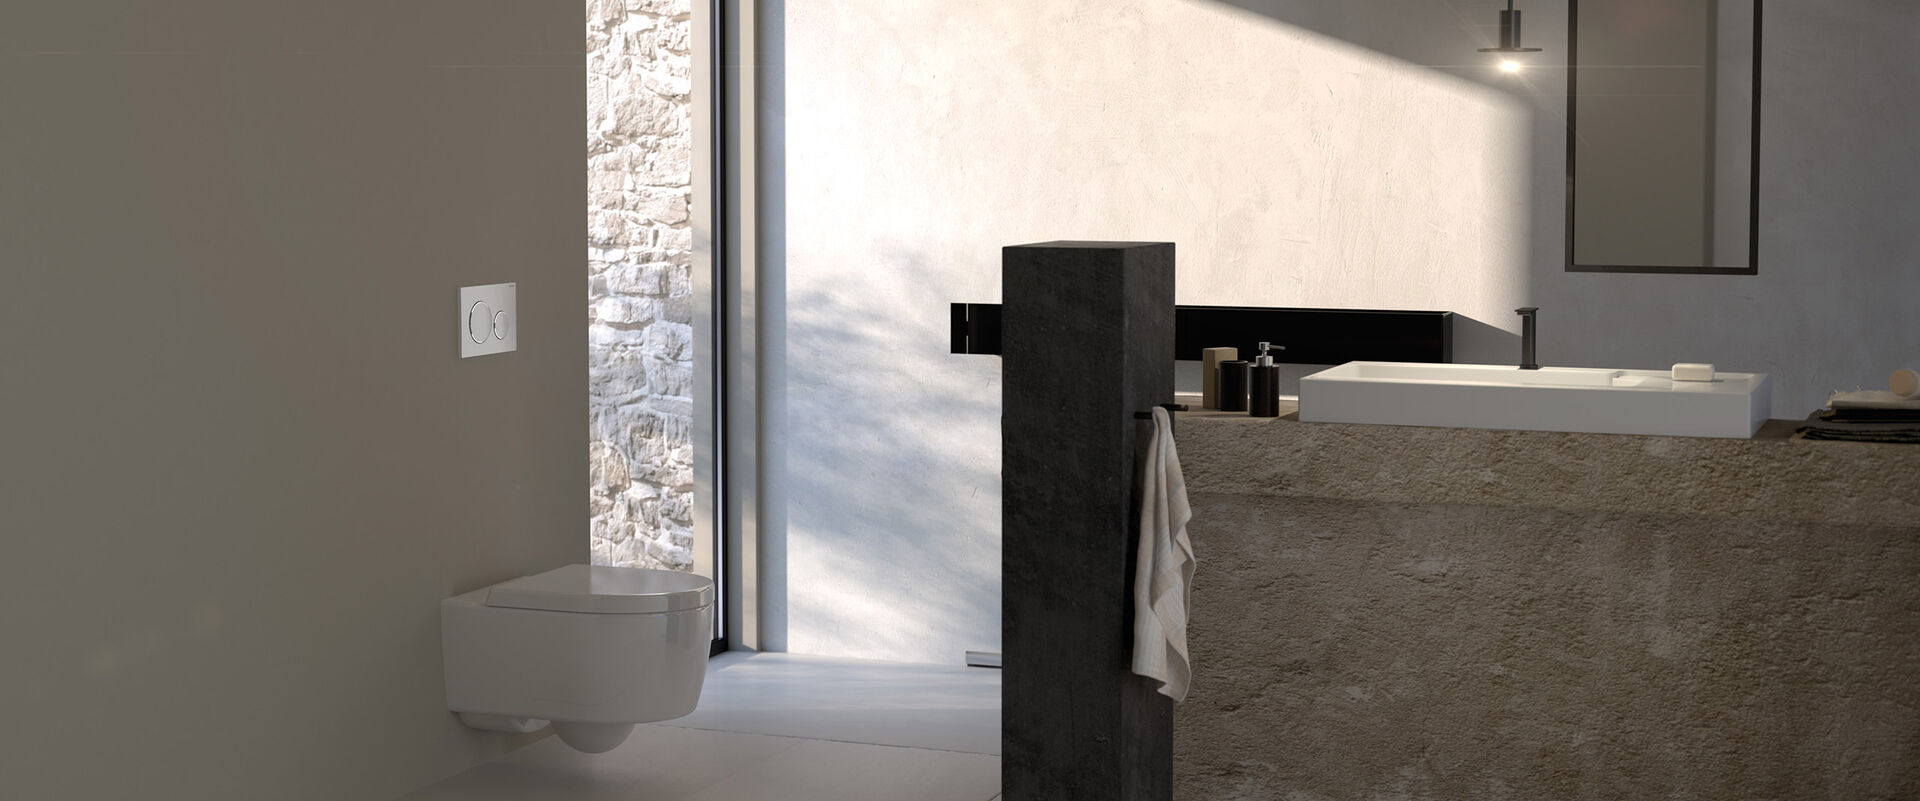 WC-Bereich in einem hellen natursteinfarbenen Badezimmer. Die Toilette wird mit einer Sigma20 Betätigungsplatte bedient, die mit einer easy-to-clean-Beschichtung versehen ist.